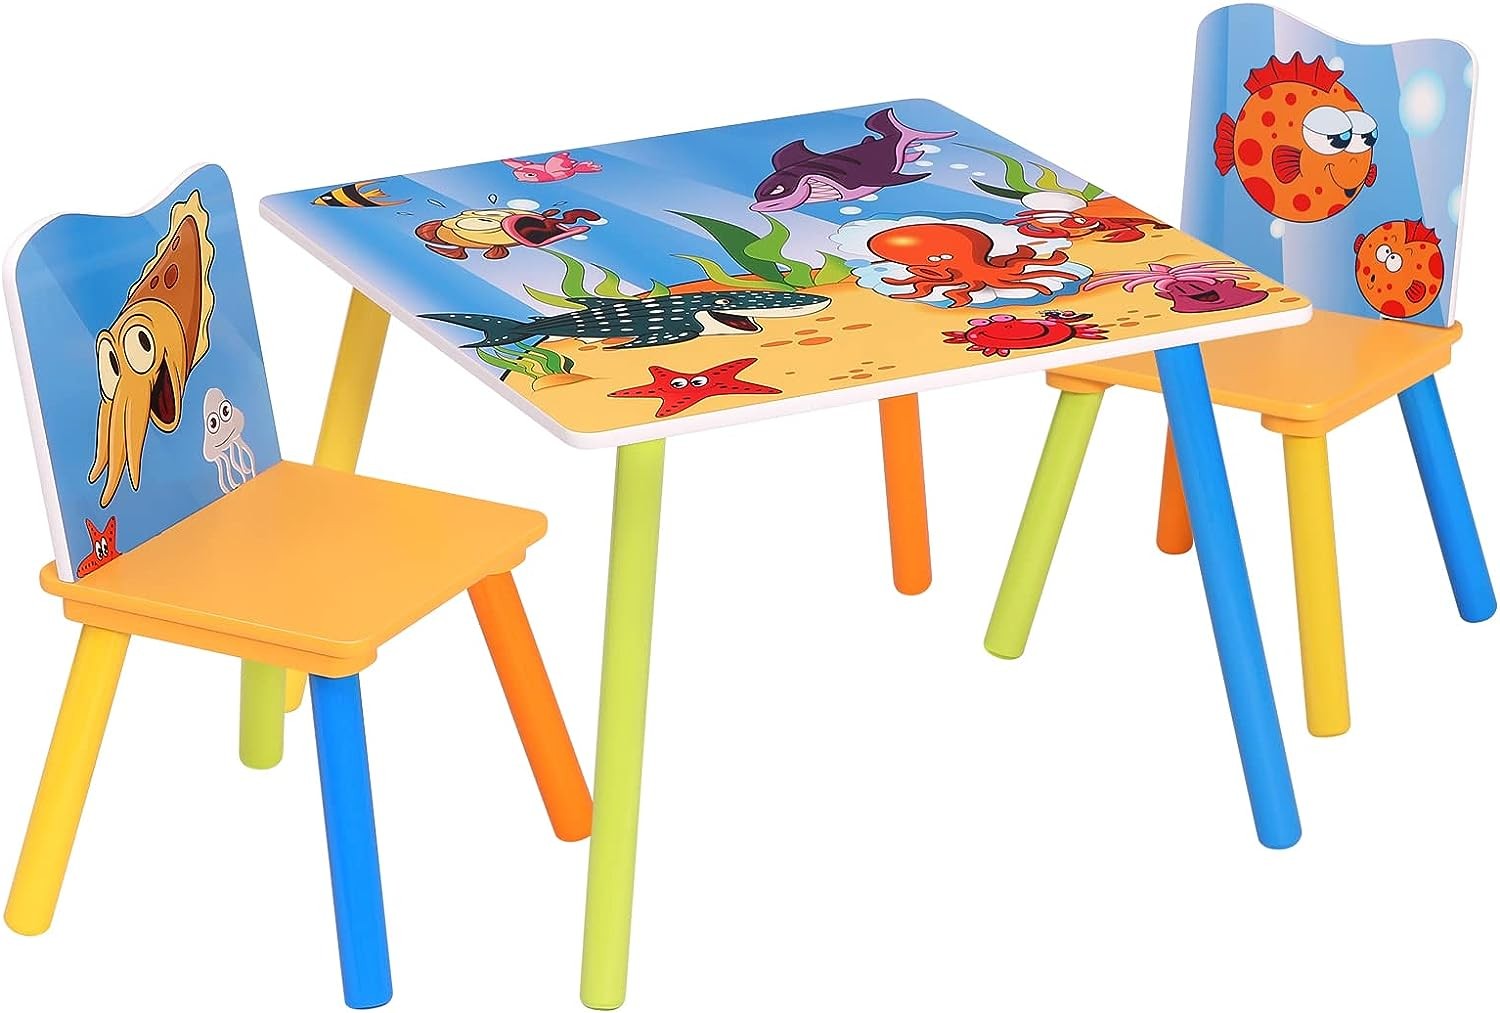 Set con tavolo basso con 2 sedie per bambini in MDF verde GIOIA